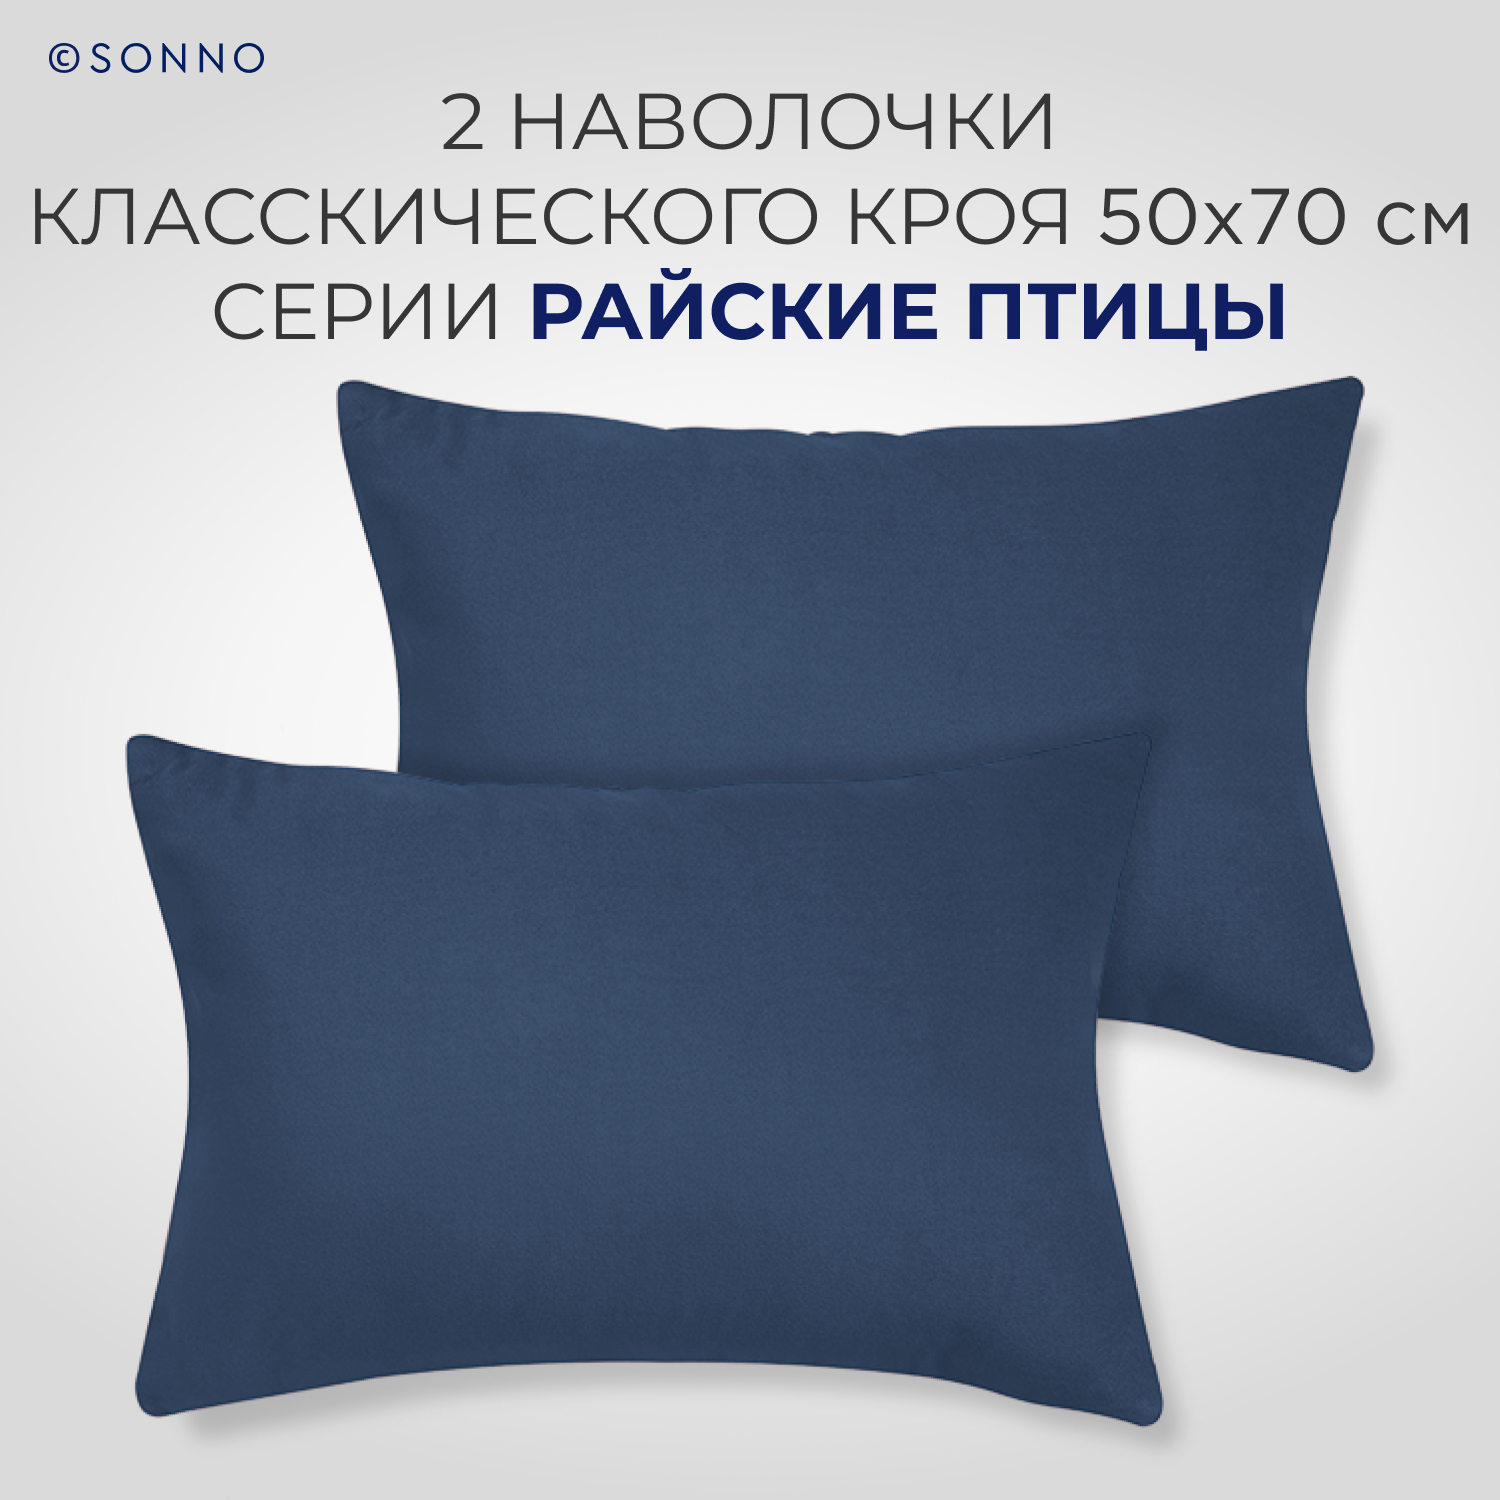 Комплект постельного белья SONNO РАЙСКИЕ ПТИЦЫ 1.5-спальный цвет Синий - фото 3